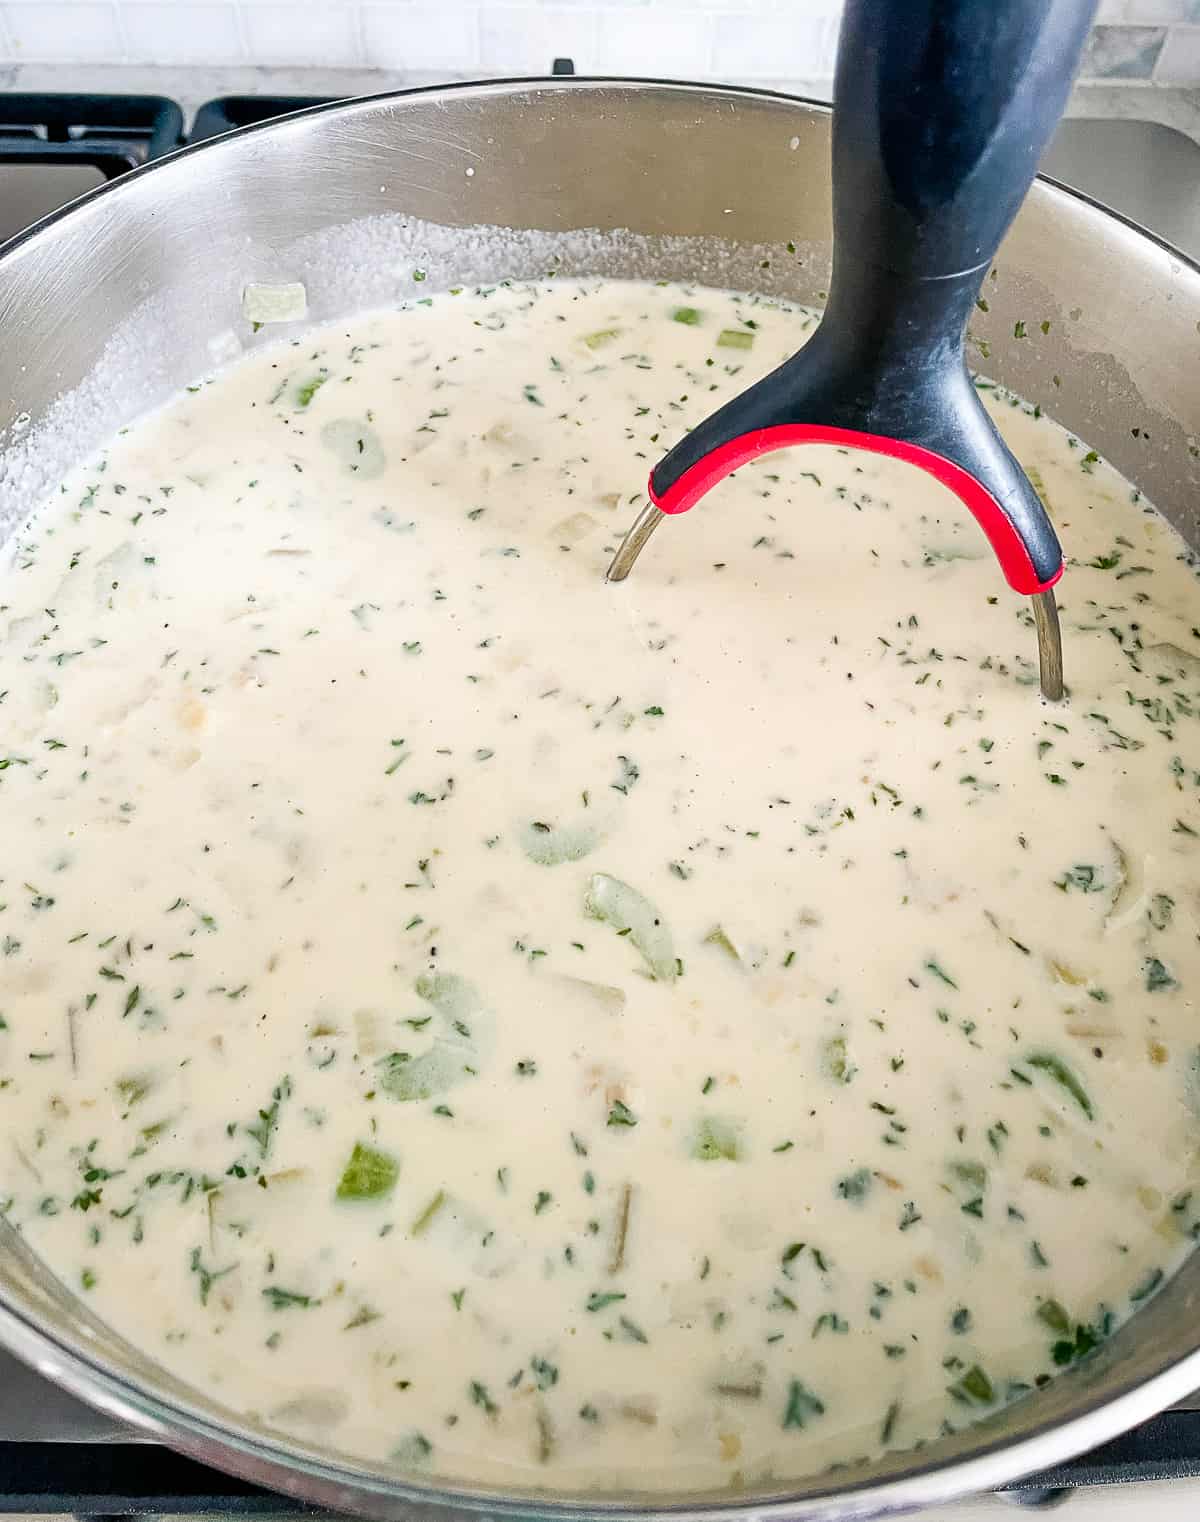 mashing potatoes in a pot of soup